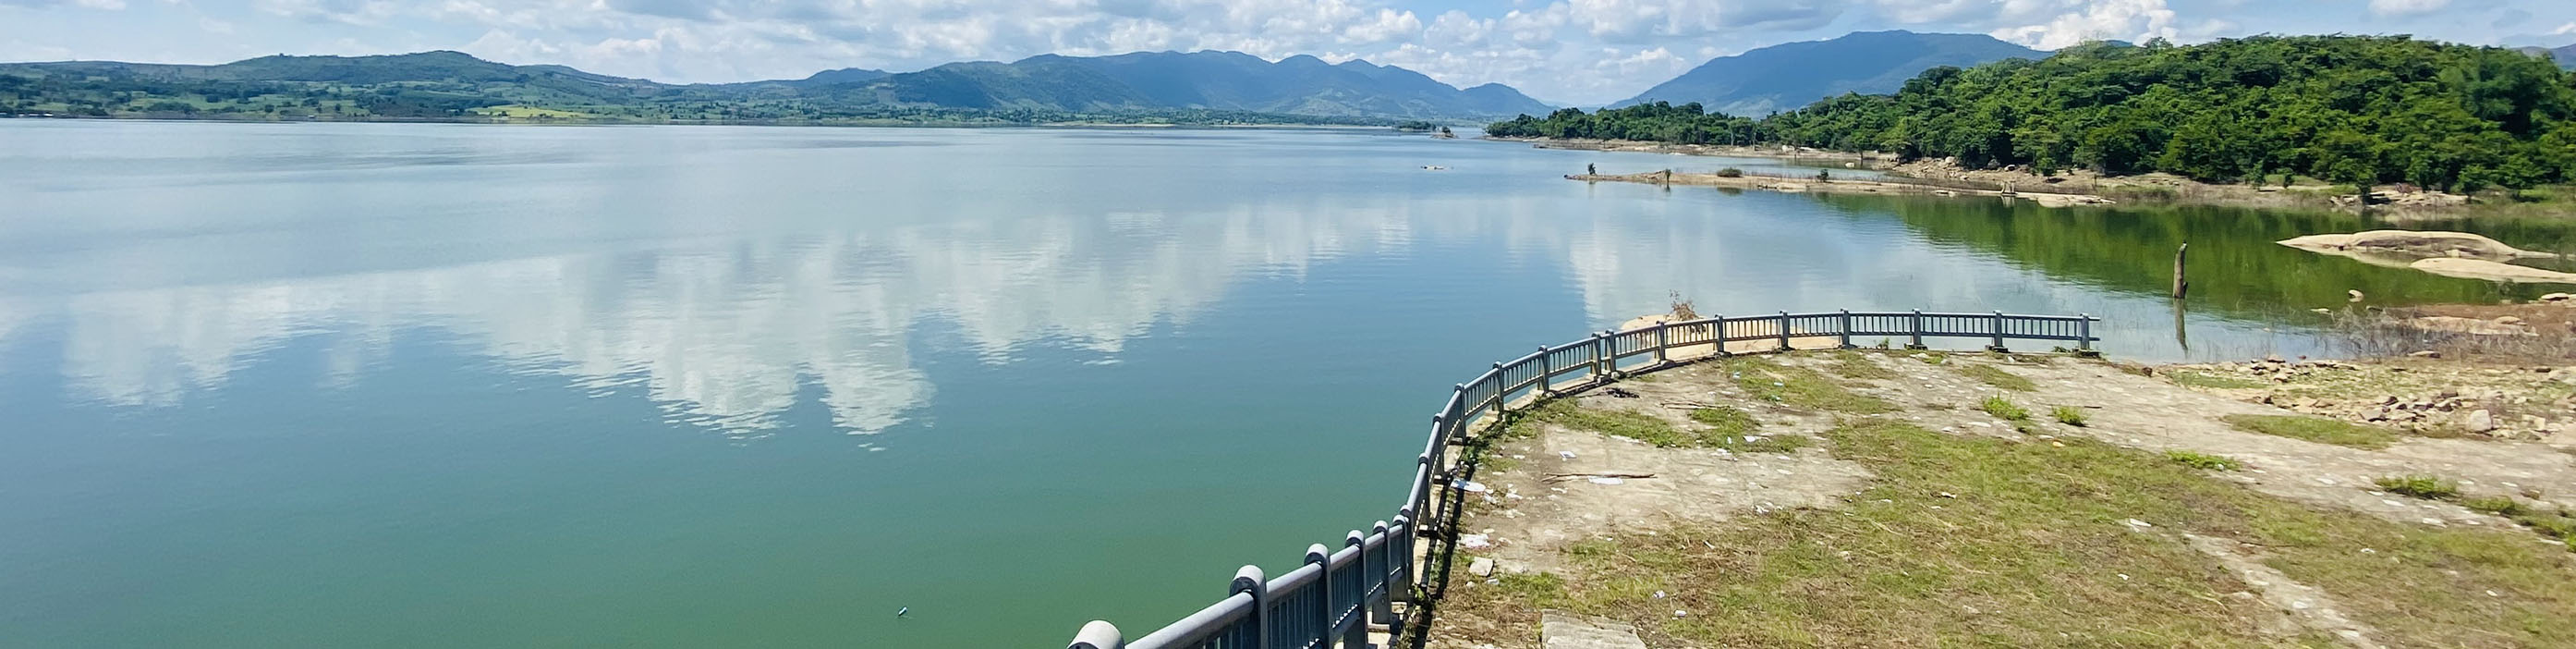 Hồ chứa thủy điện Krông H'năng